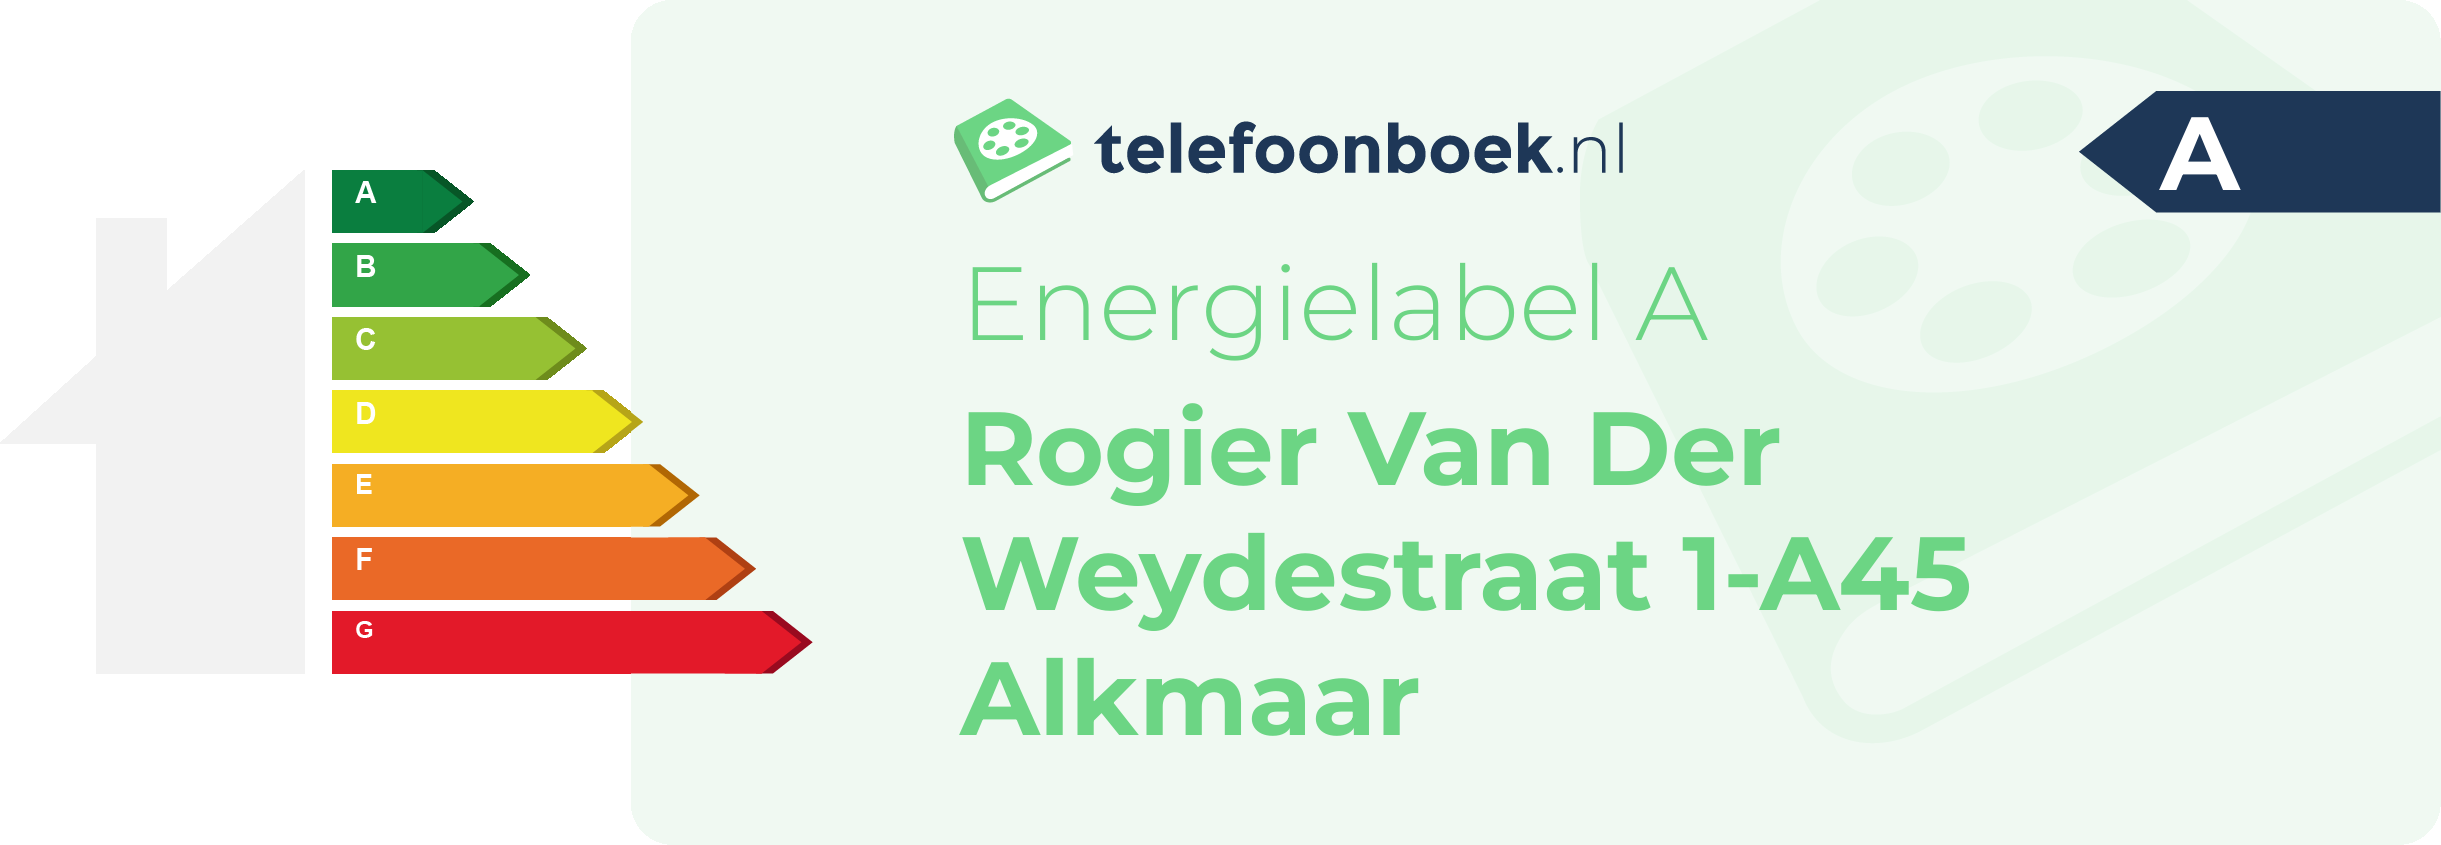 Energielabel Rogier Van Der Weydestraat 1-A45 Alkmaar